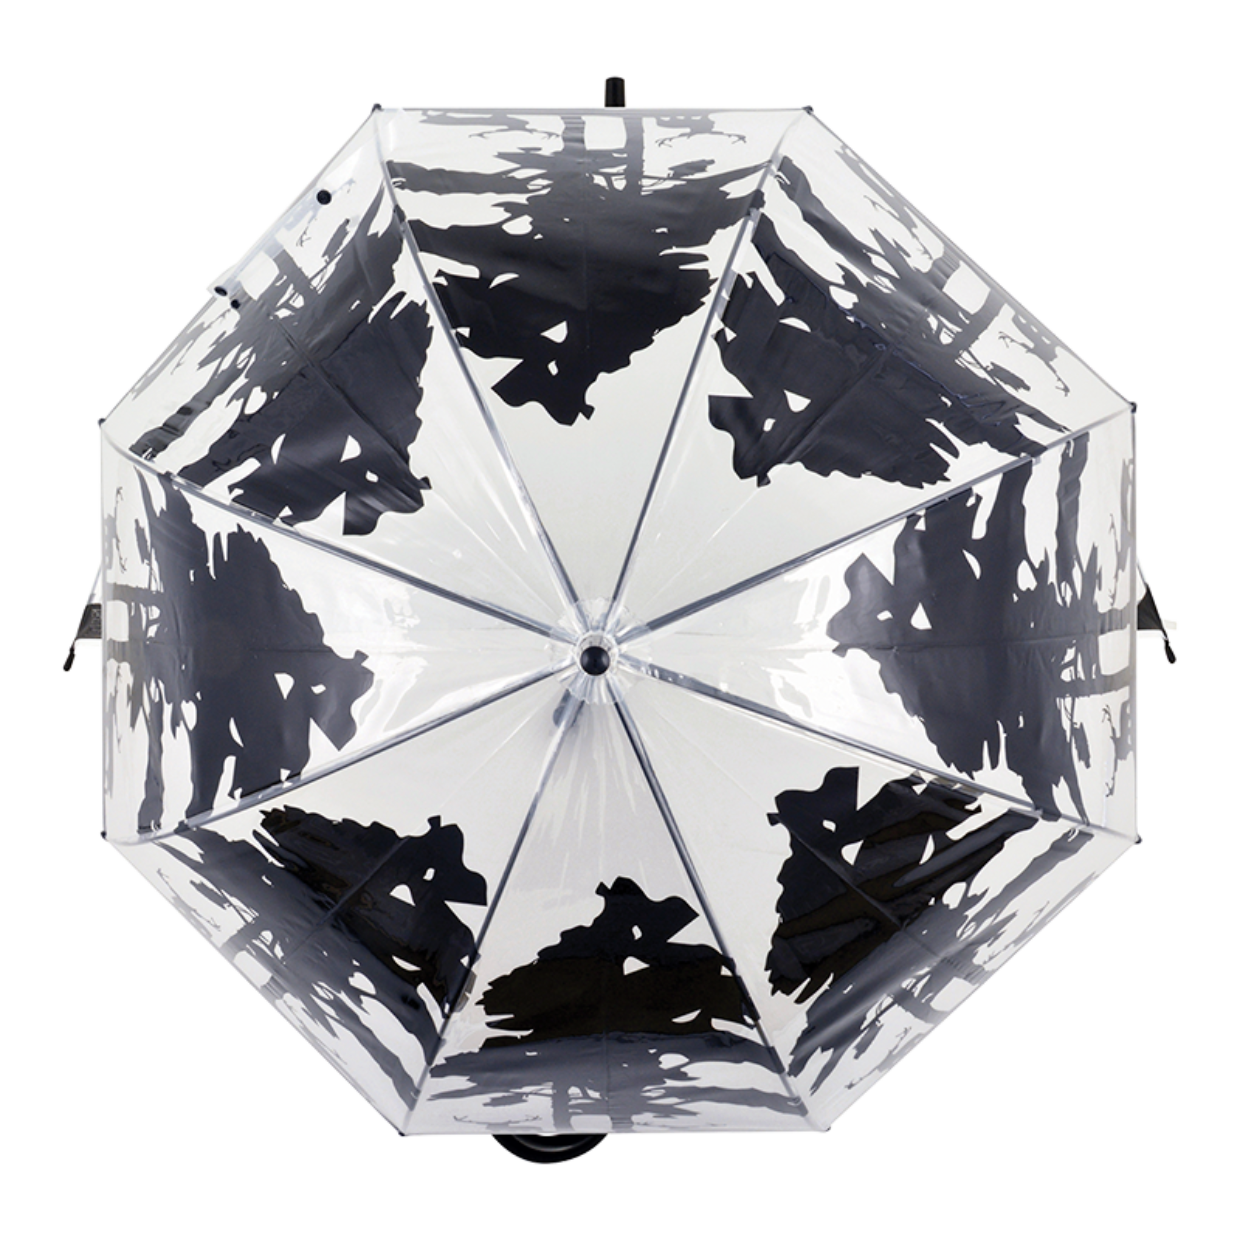 Transparent Forest Design Umbrella